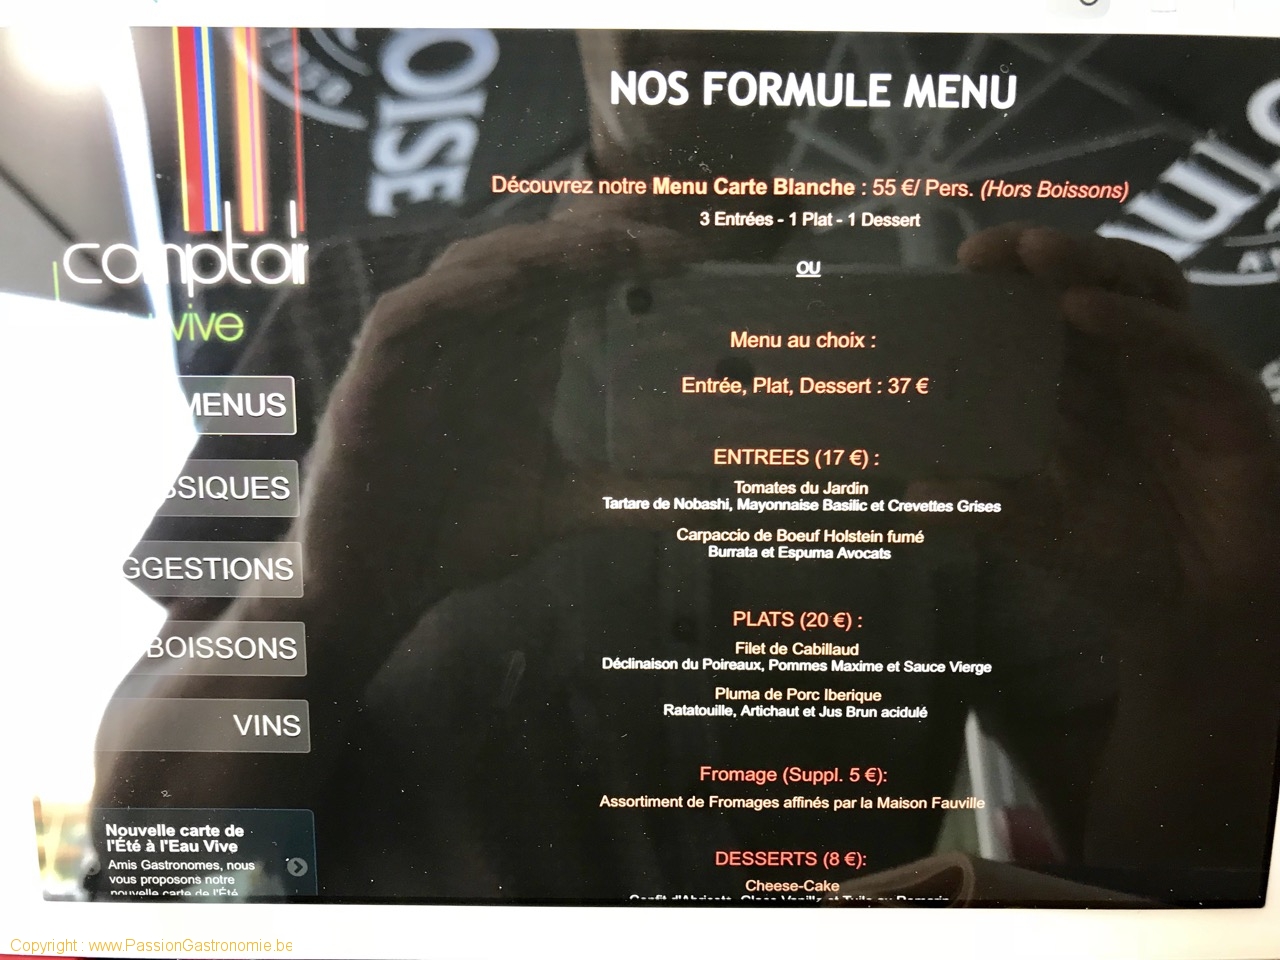 Restaurant Le Comptoir de l'Eau Vive - Les menus